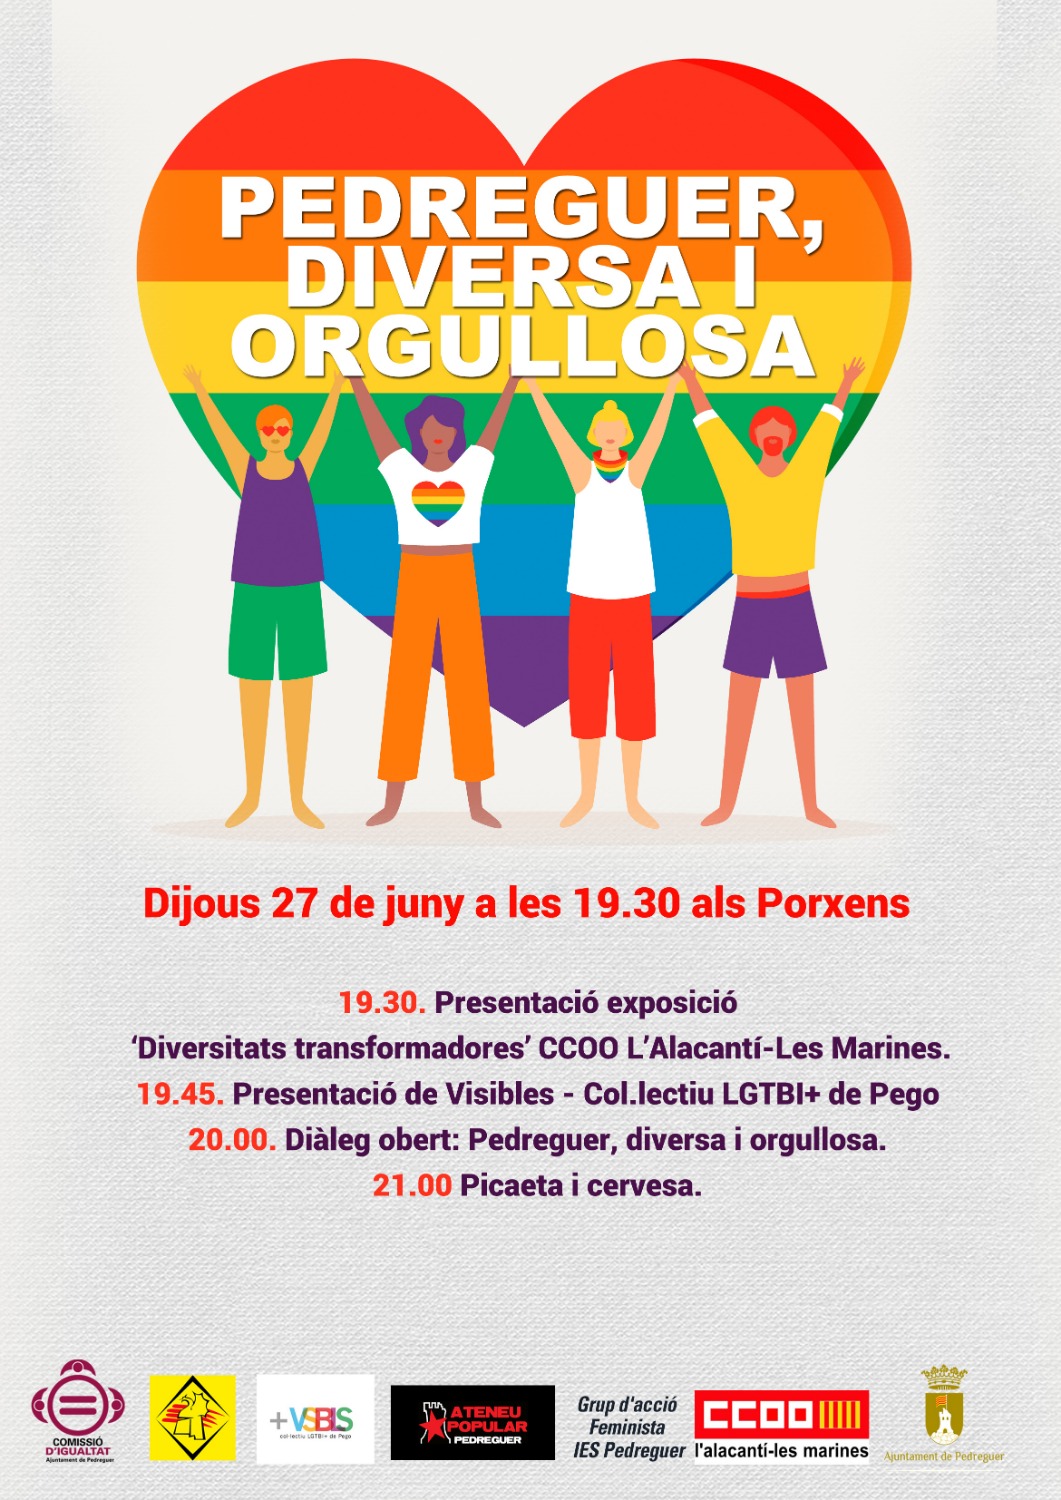 El día 27 de junio Pedreguer celebrará el orgullo LGTBIQ+ con un encuentro sobre diversidades